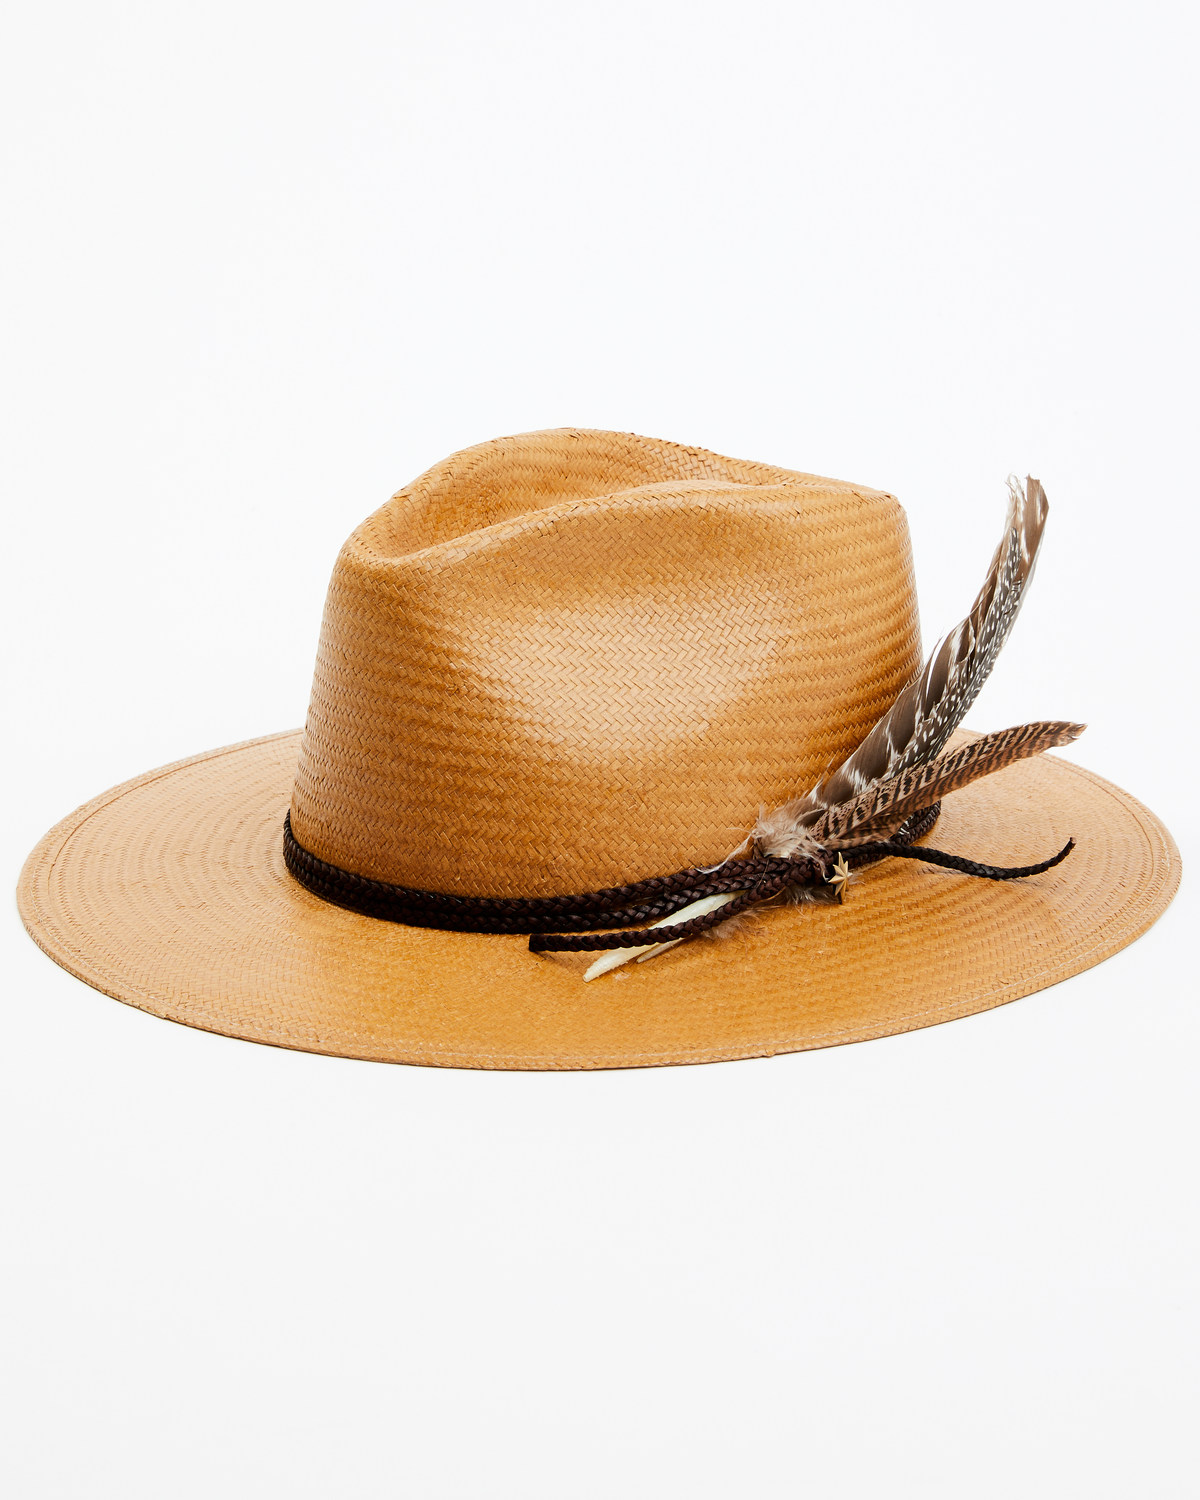 Stetson Men's Juno Straw Western Fashion Hat